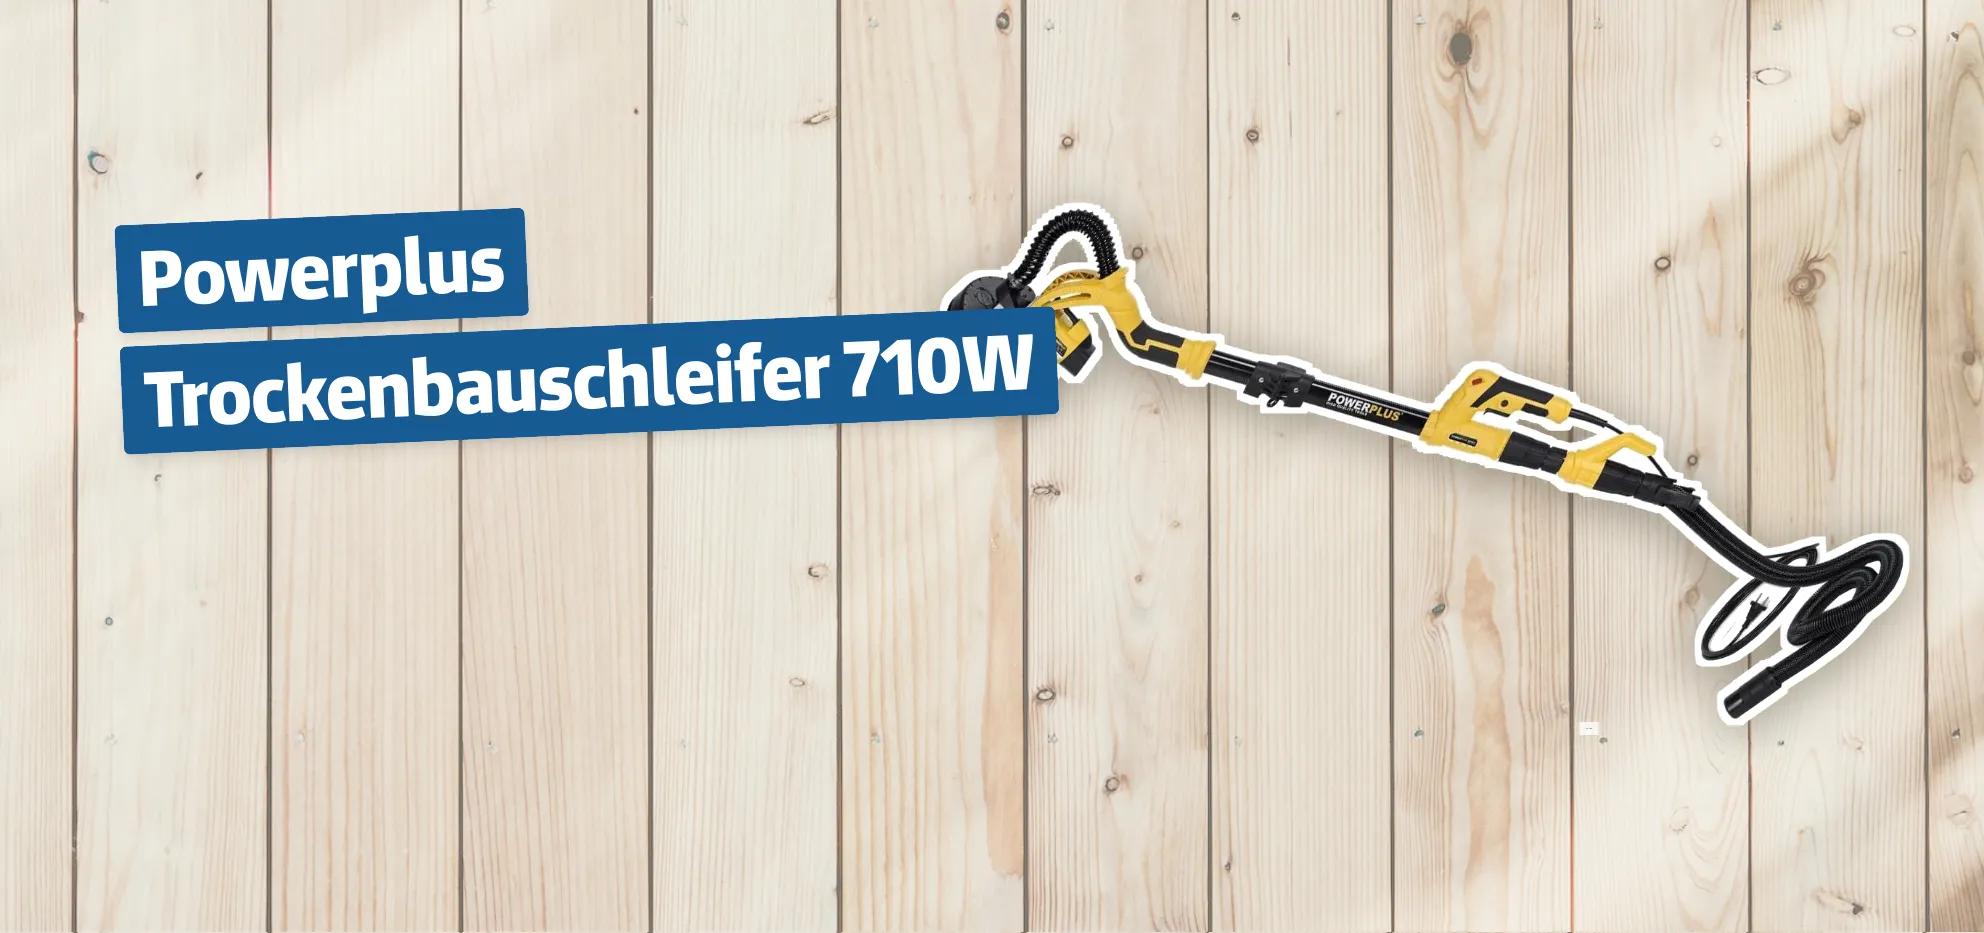 Powerplus Trockenbauschleifer 710W